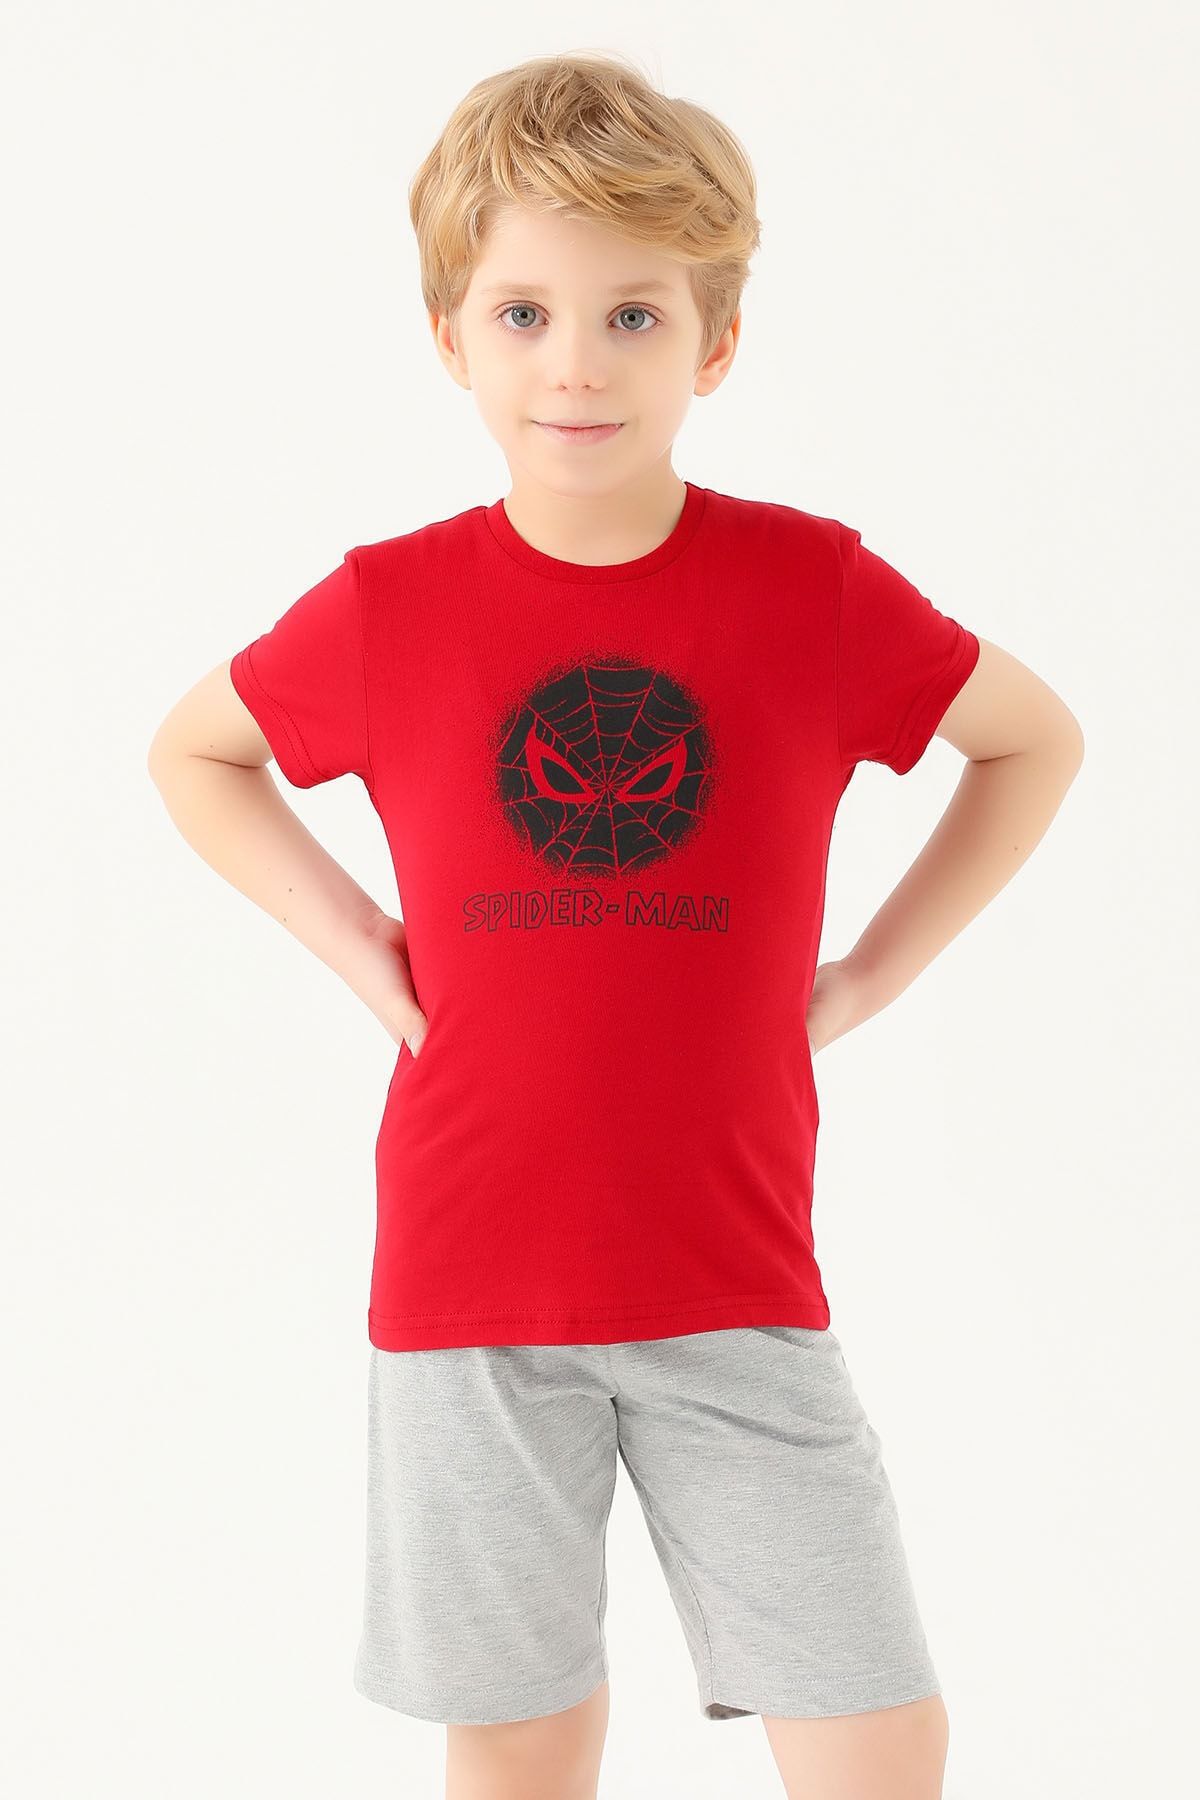 Spiderman Spıder-man Erkek Çocuk T-shırt Kırmızı